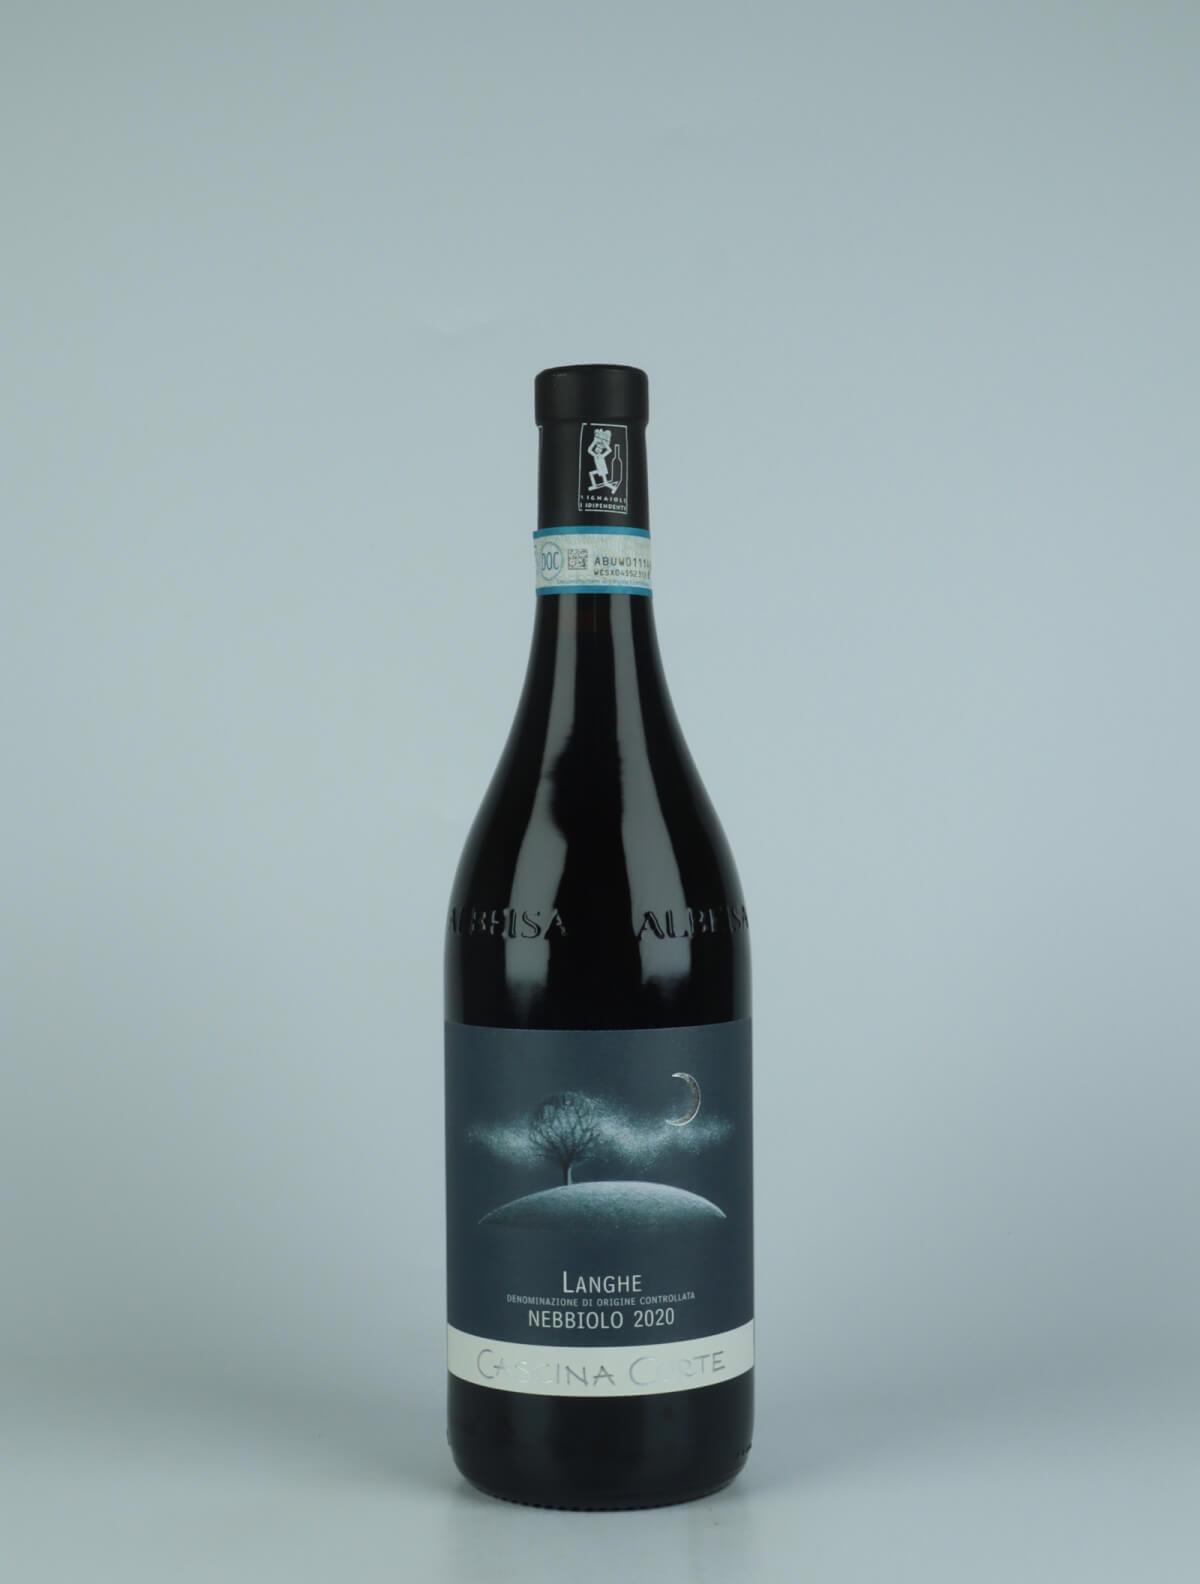 En flaske 2020 Langhe Nebbiolo Rødvin fra Cascina Corte, Piemonte i Italien